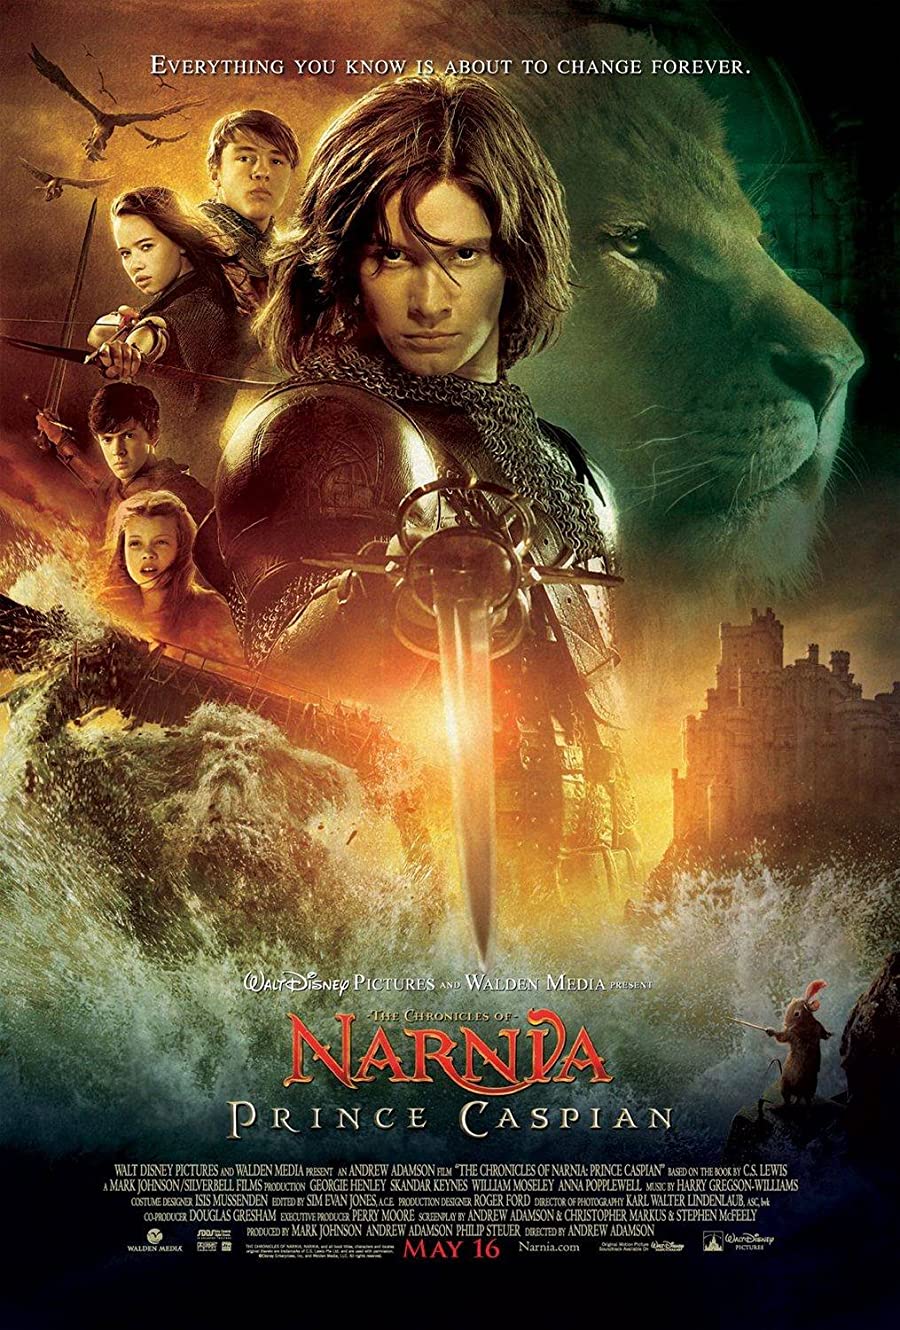 دانلود فیلم The Chronicles of Narnia: Prince Caspian 2008 نارنیا ۲: شاهزاده کاسپین با دوبله فارسی